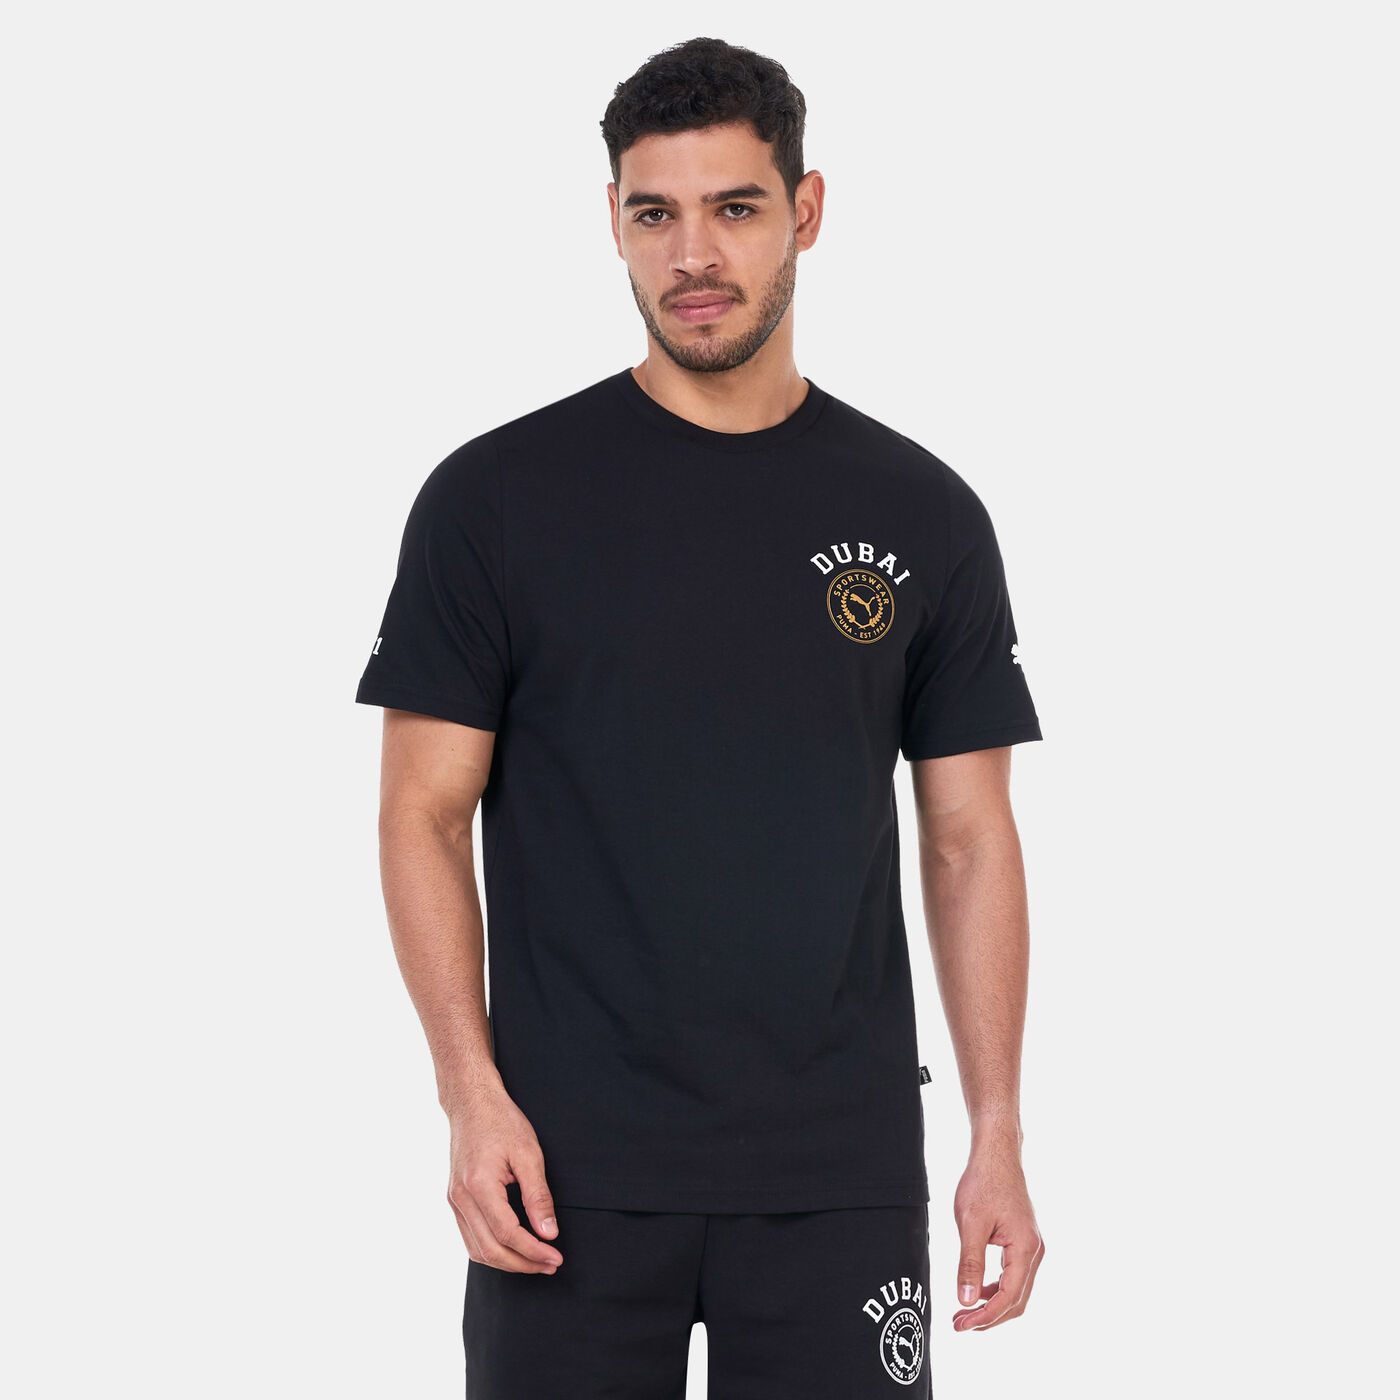 Men's Dubai City T-Shirt